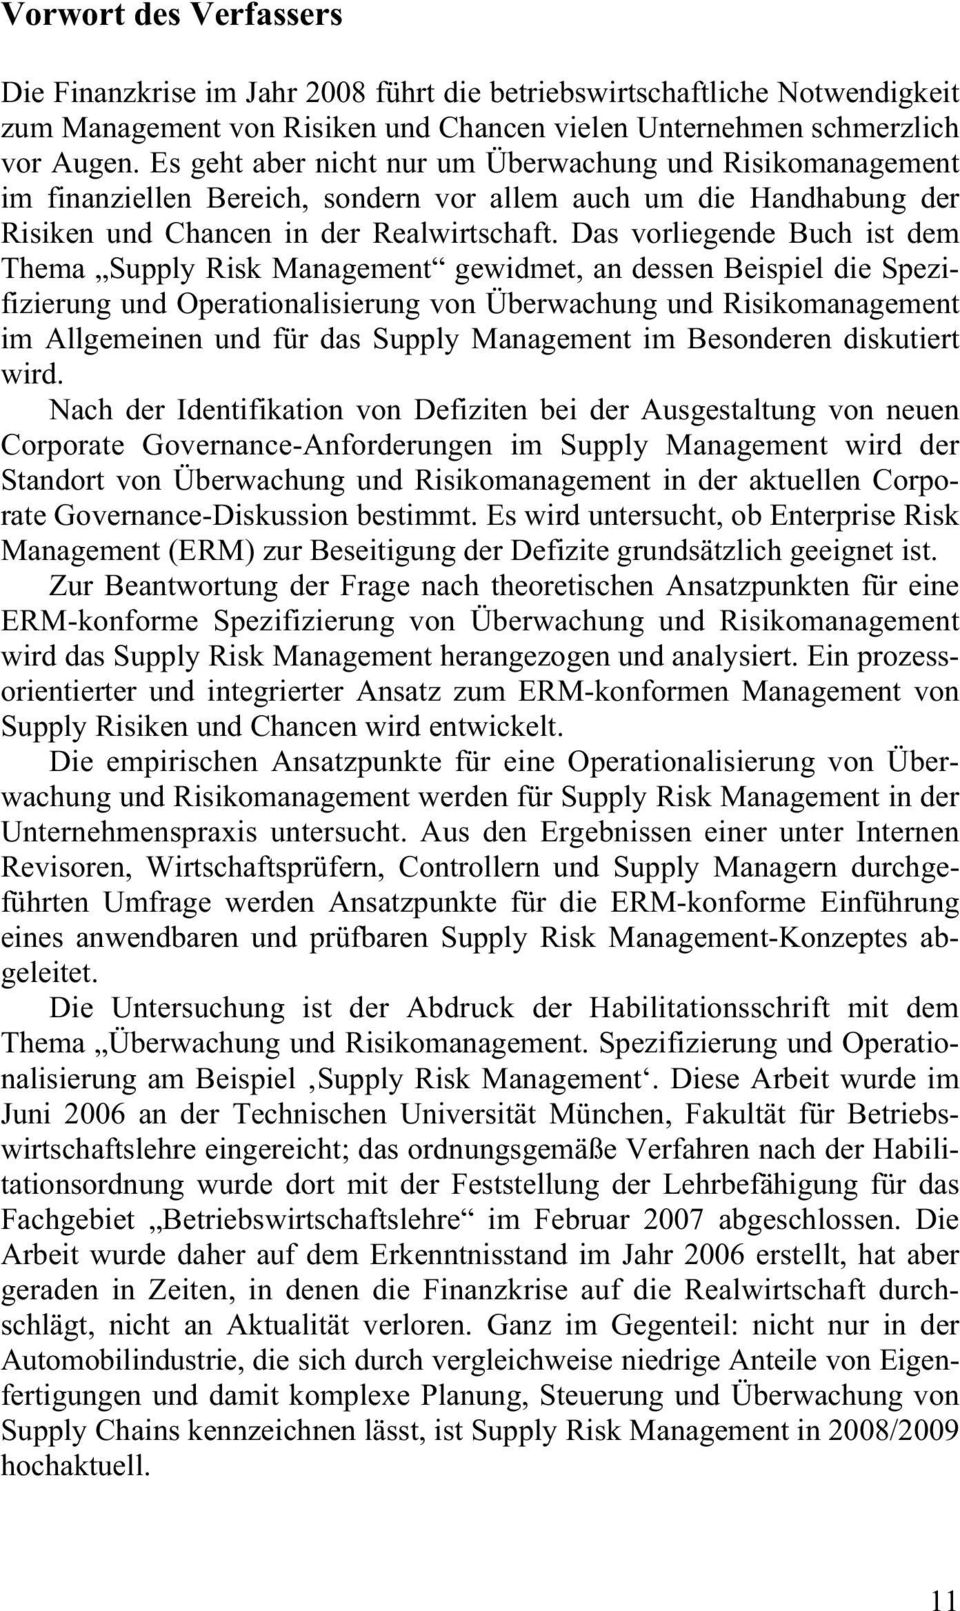 Das vorliegende Buch ist dem Thema Supply Risk Management gewidmet, an dessen Beispiel die Spezifizierung und Operationalisierung von Überwachung und Risikomanagement im Allgemeinen und für das